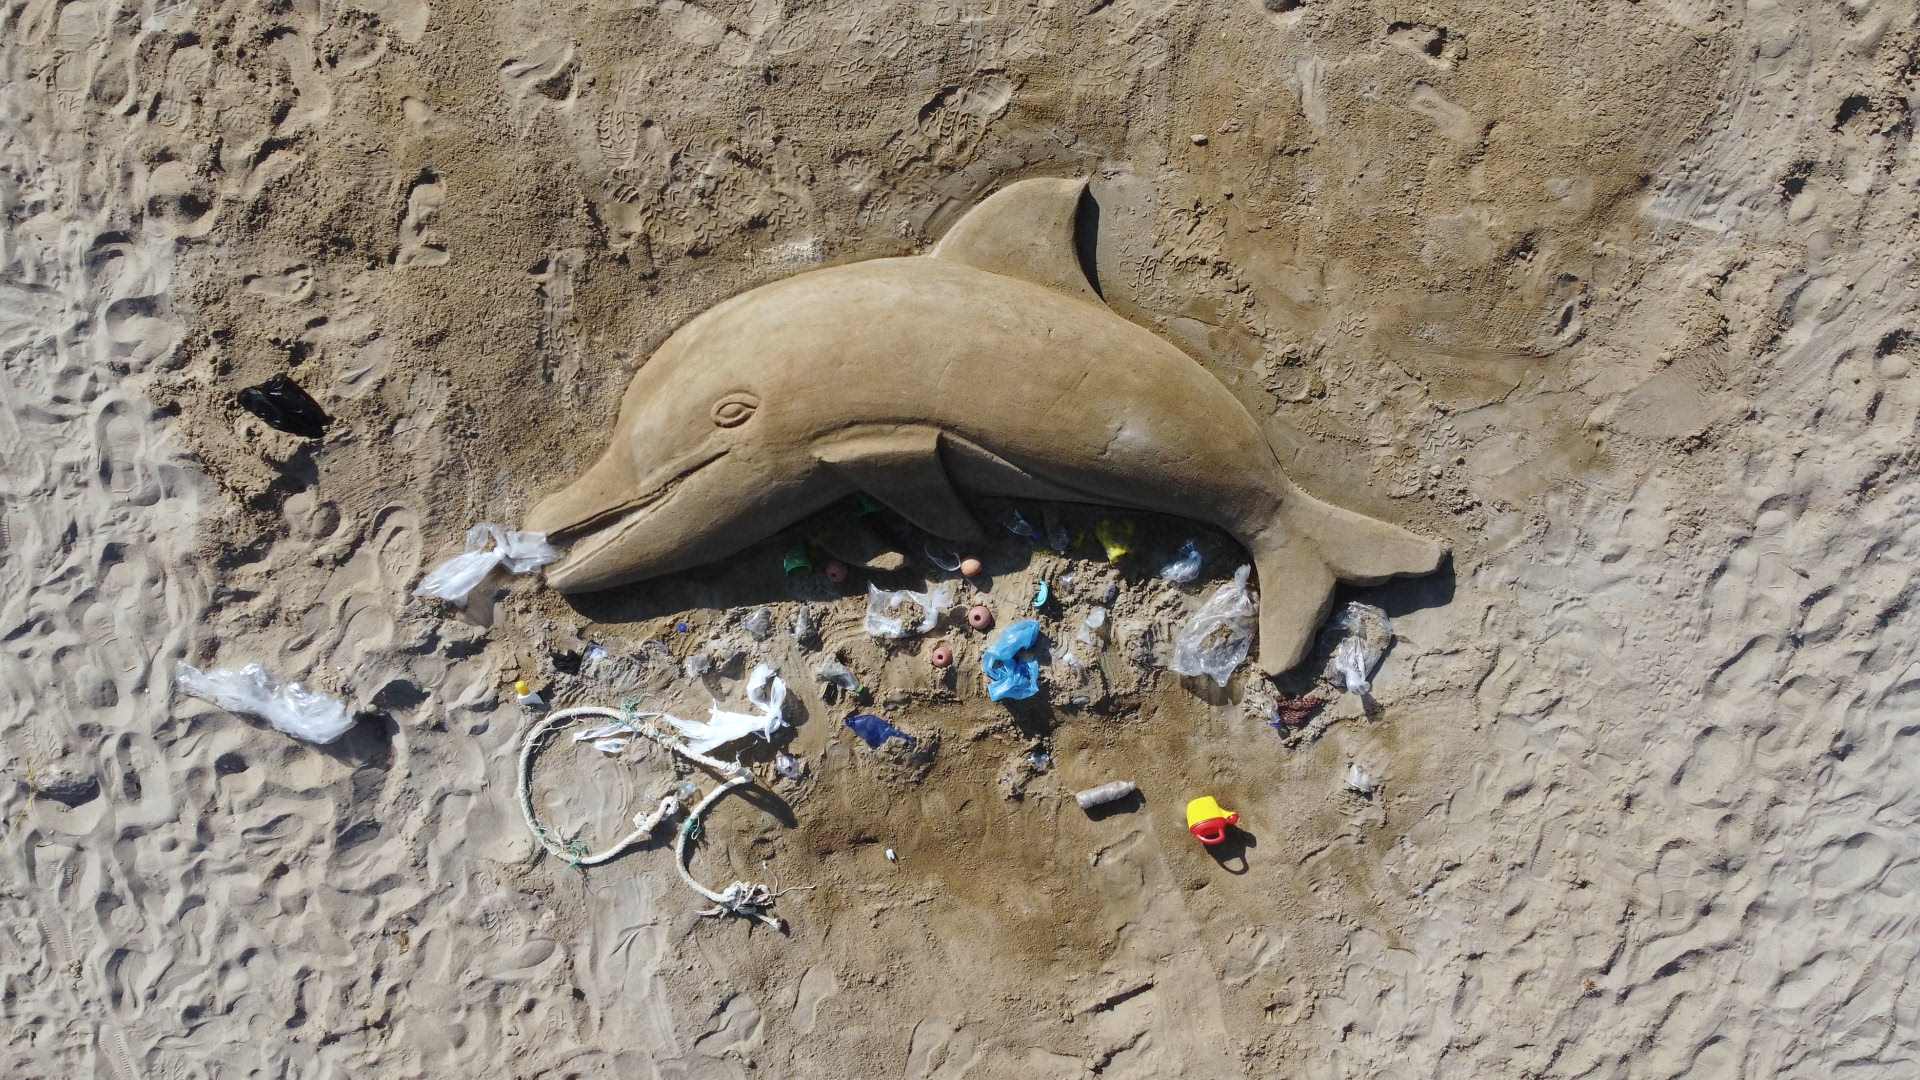 Νεκρό δελφίνι στην άμμο φιλοτέχνησε ο Κρητικός γλύπτης Μ. Χαρκούτσης